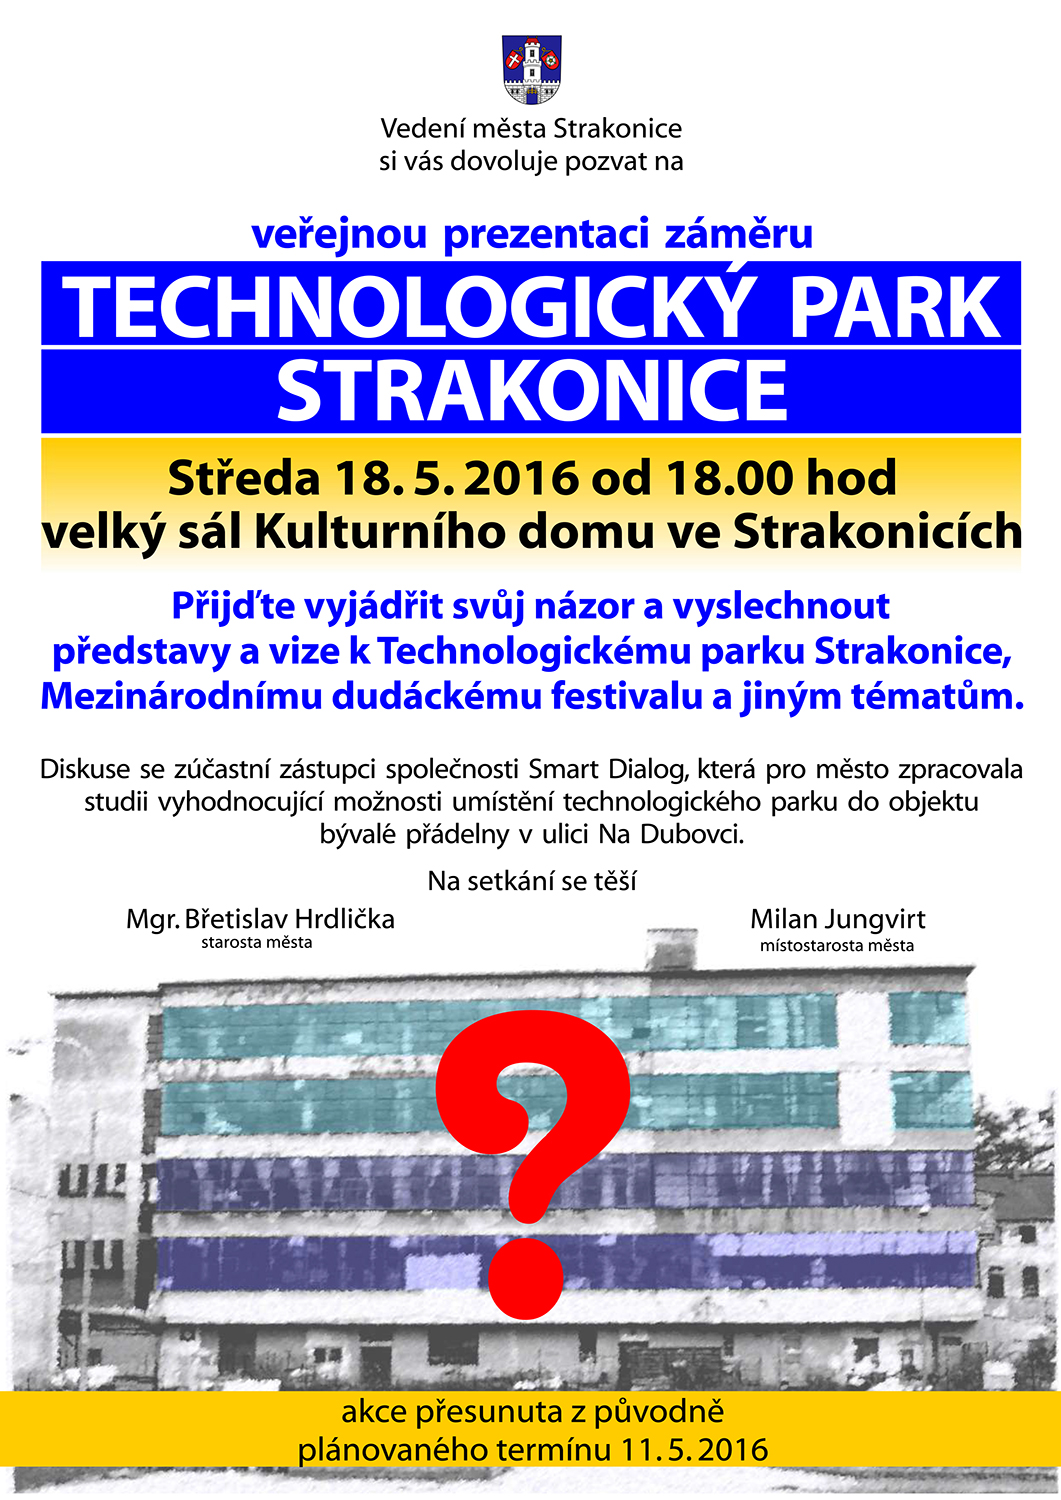 Oznámení o besedě „Technologický park Strakonicko“ v novém termínu 18.5.2016, oficiální leták města, vydaný 16.5.2016 – beseda se již má týkat více témat